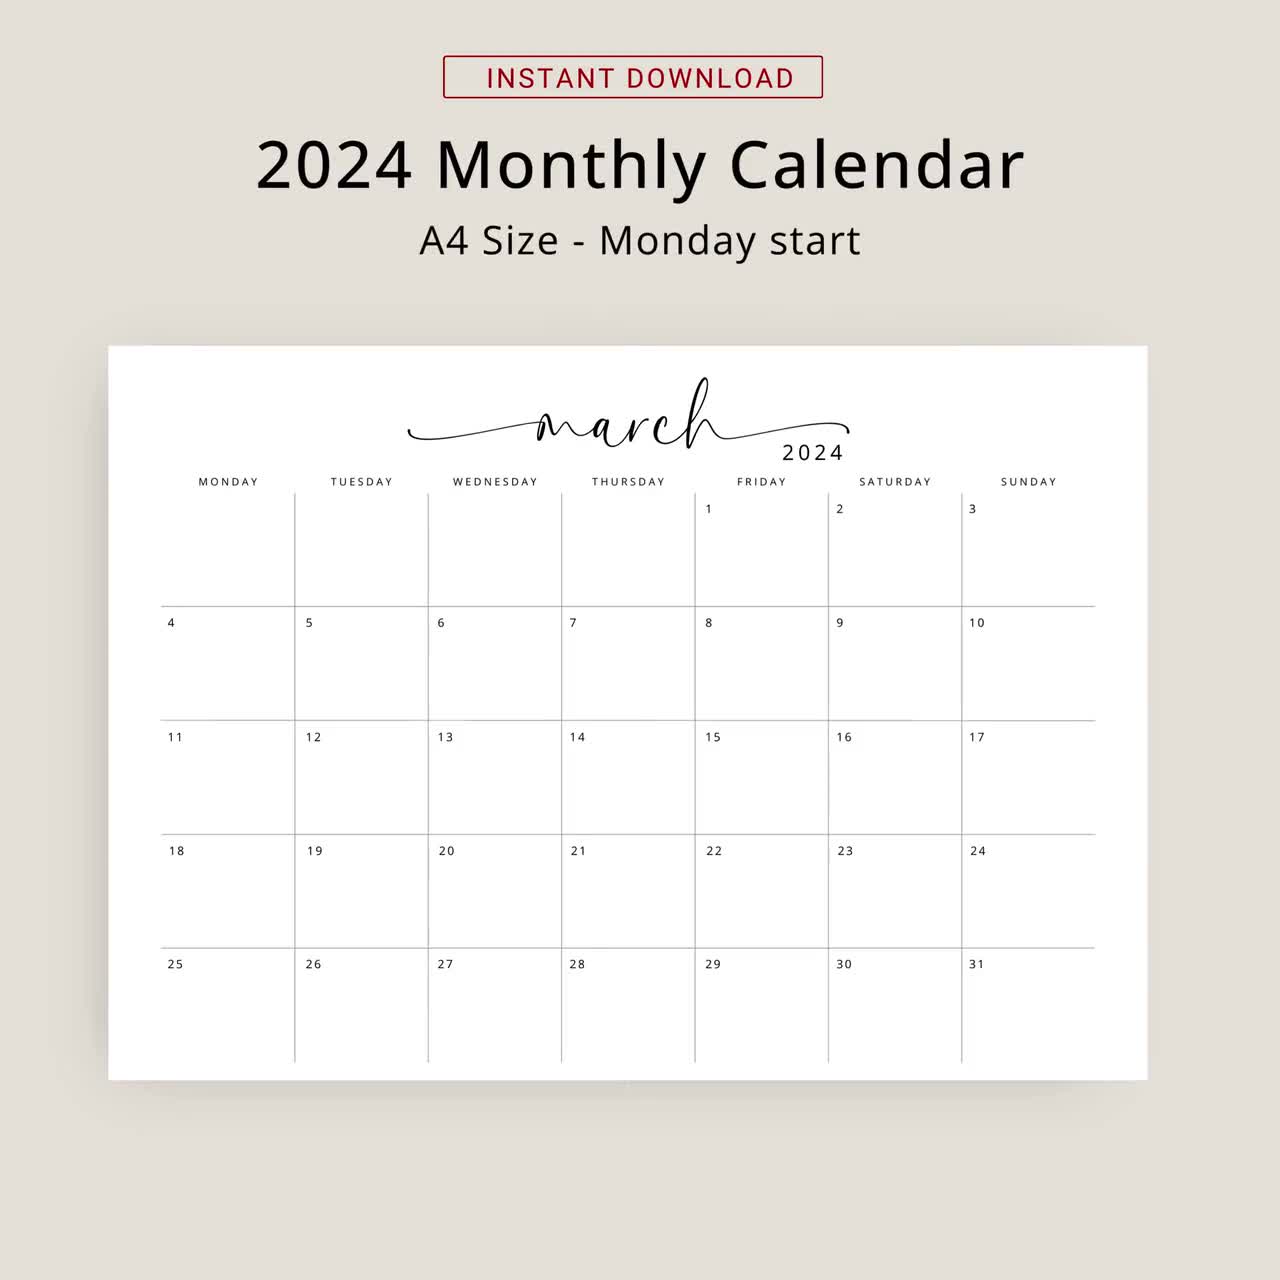 Calendario 2024 En Español Calendario Anual 2024 Para Imprimir Spanish  Calendar 2024 Printable Spanish Minimalist Calendar A3 A4 Letter Size -   Denmark